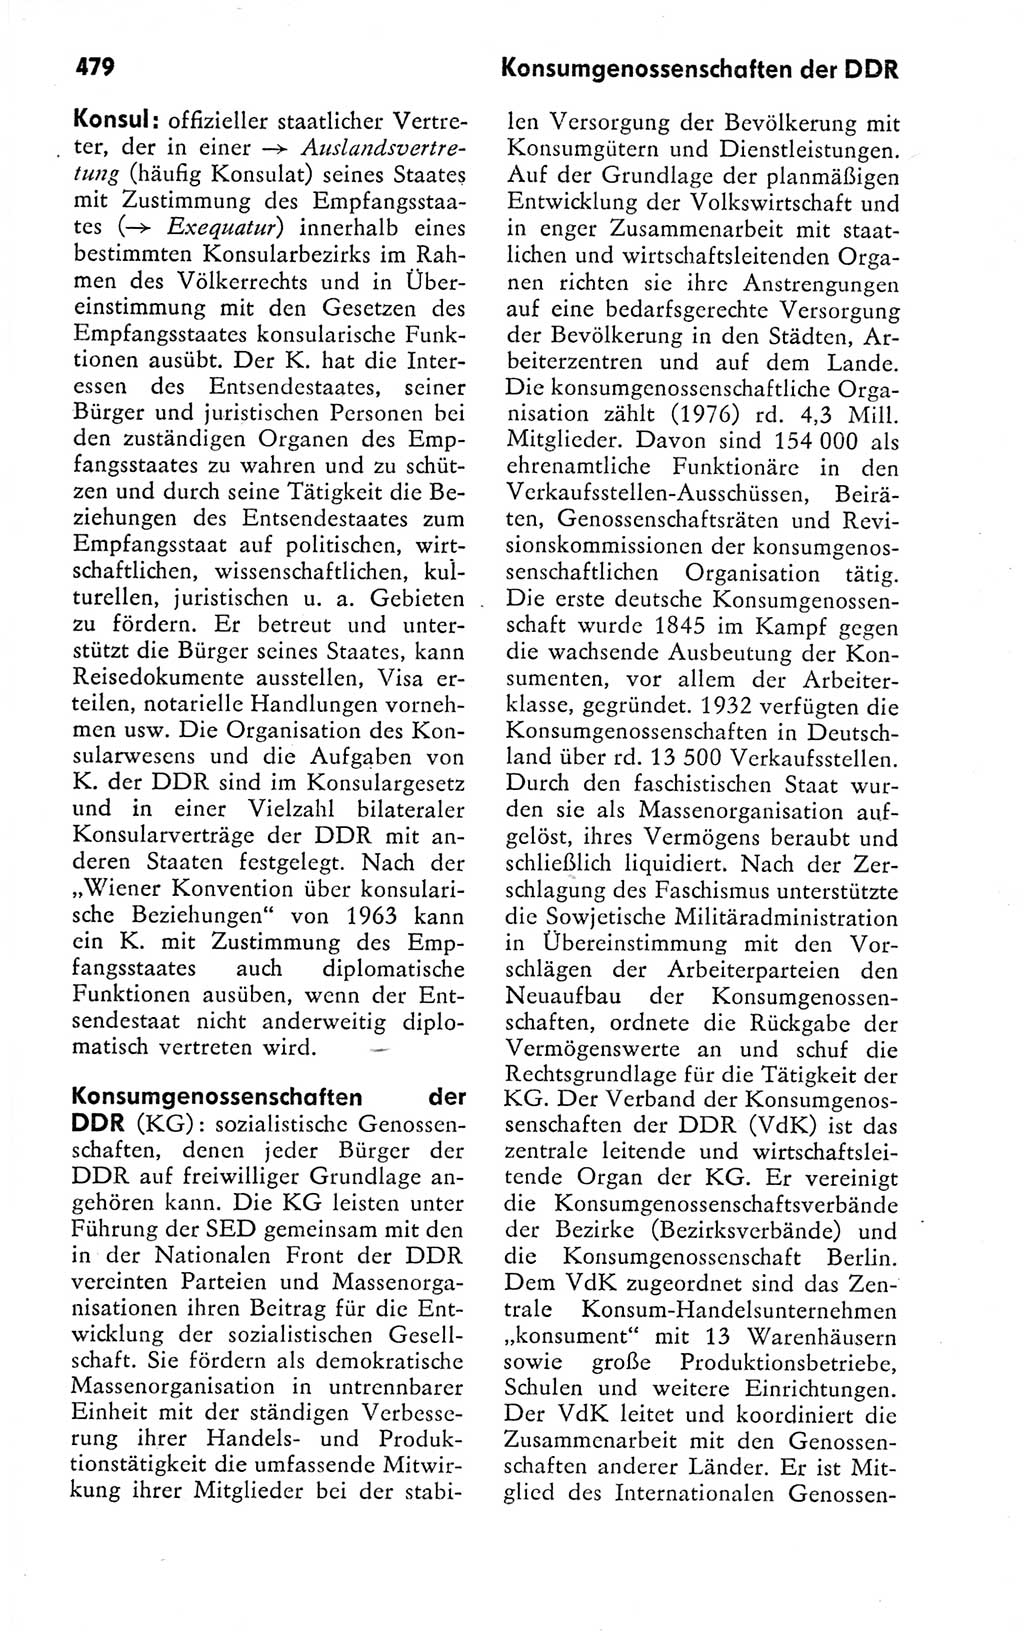 Kleines politisches Wörterbuch [Deutsche Demokratische Republik (DDR)] 1978, Seite 479 (Kl. pol. Wb. DDR 1978, S. 479)